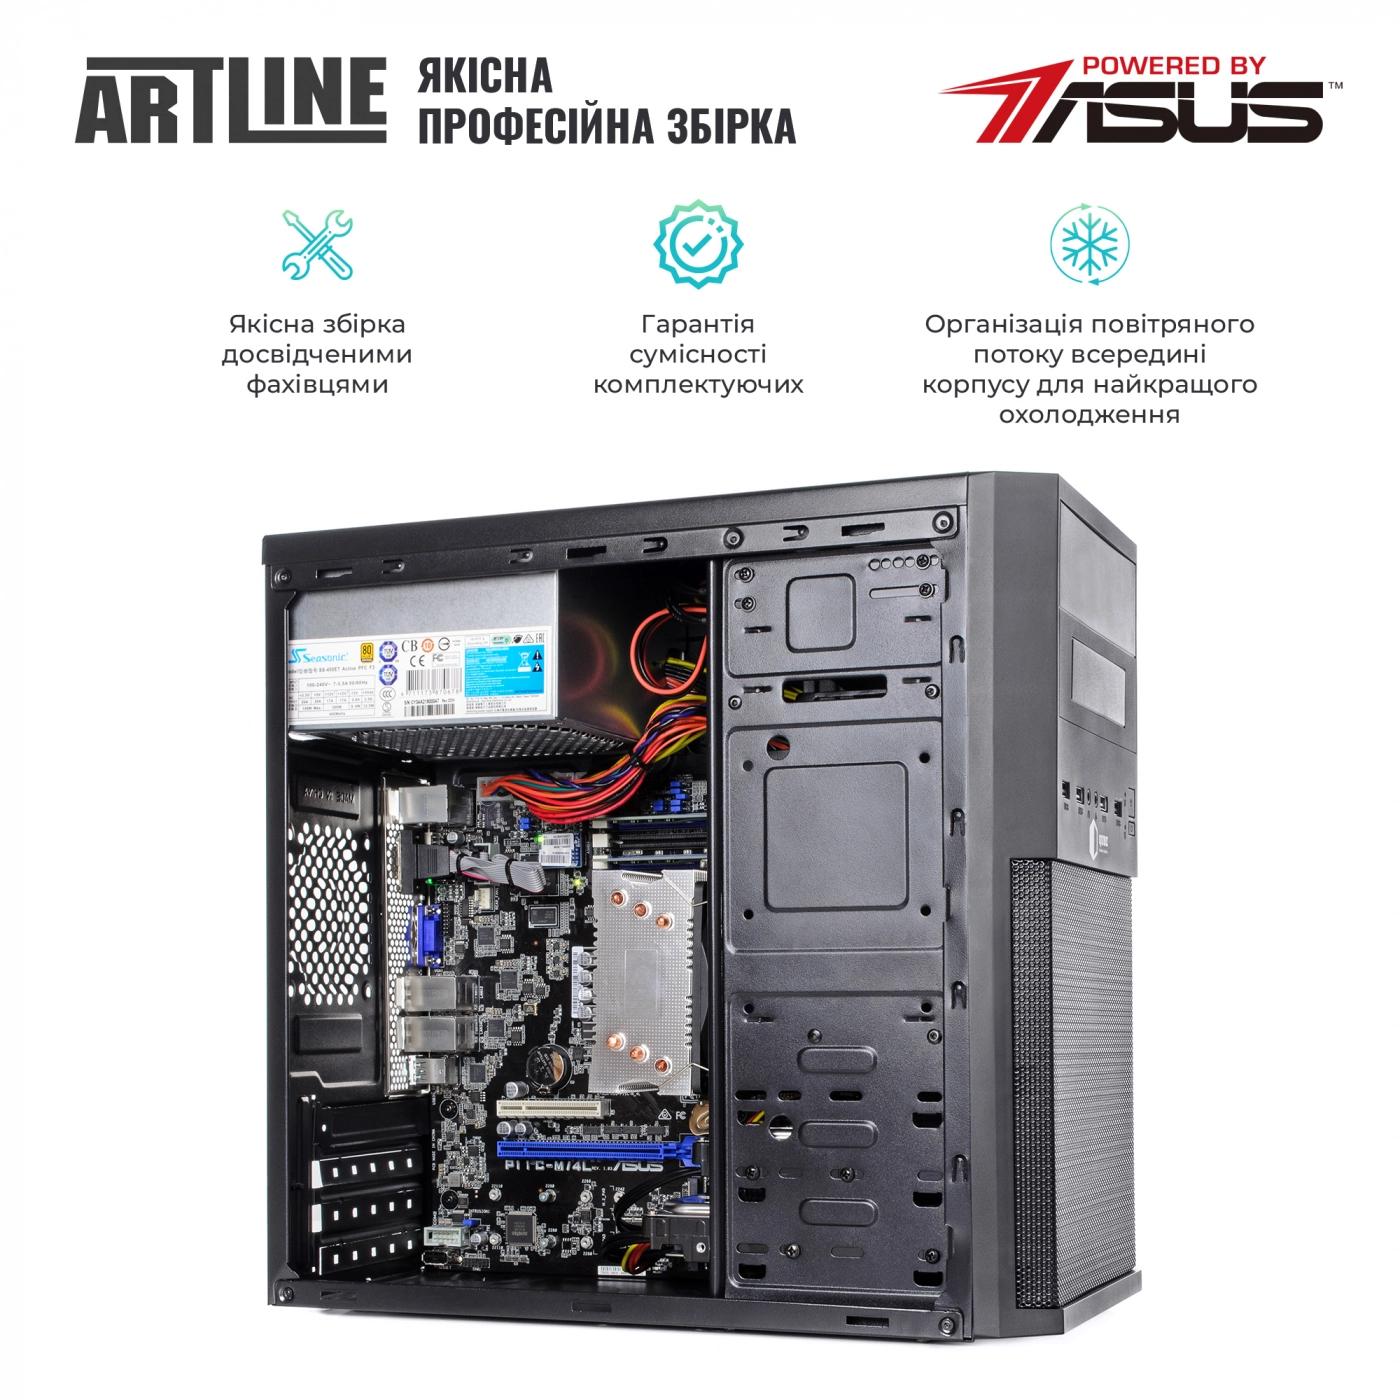 Купить Сервер ARTLINE Business T25v10 - фото 4